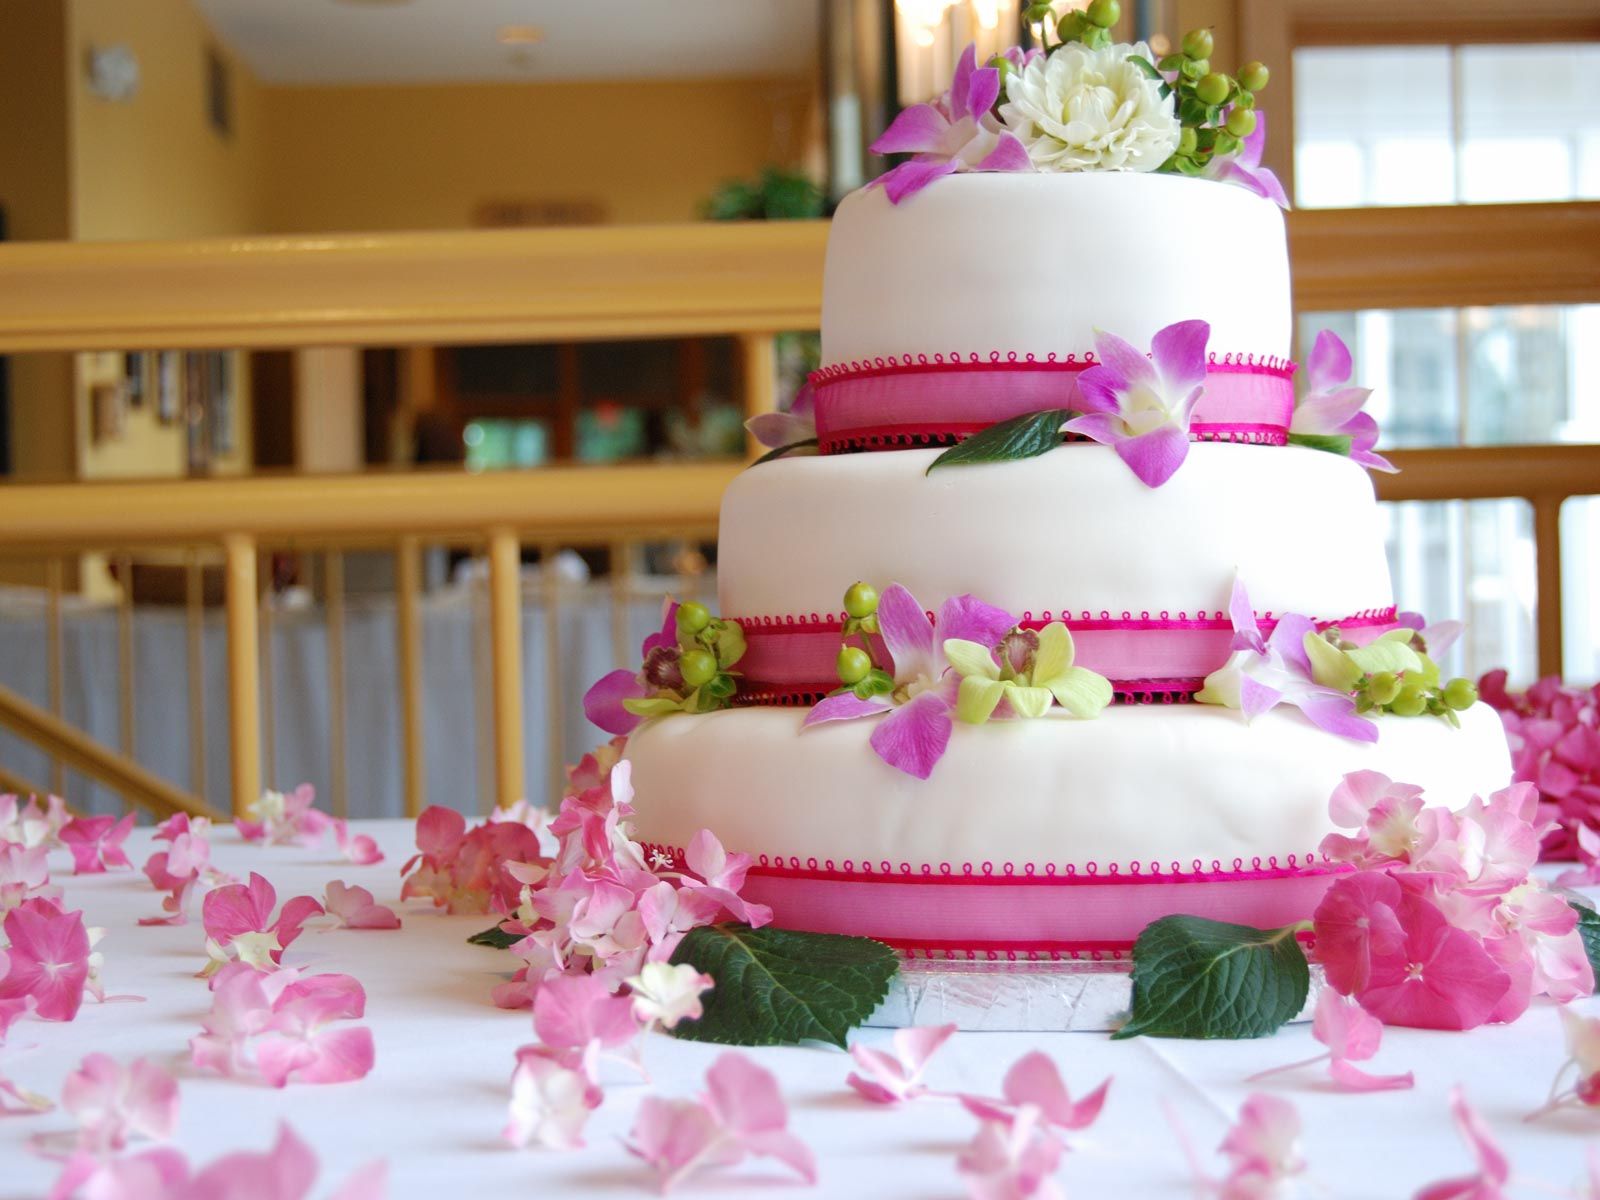 cake wallpaper,cake decorating,sugar paste,cake,wedding cake,fondant